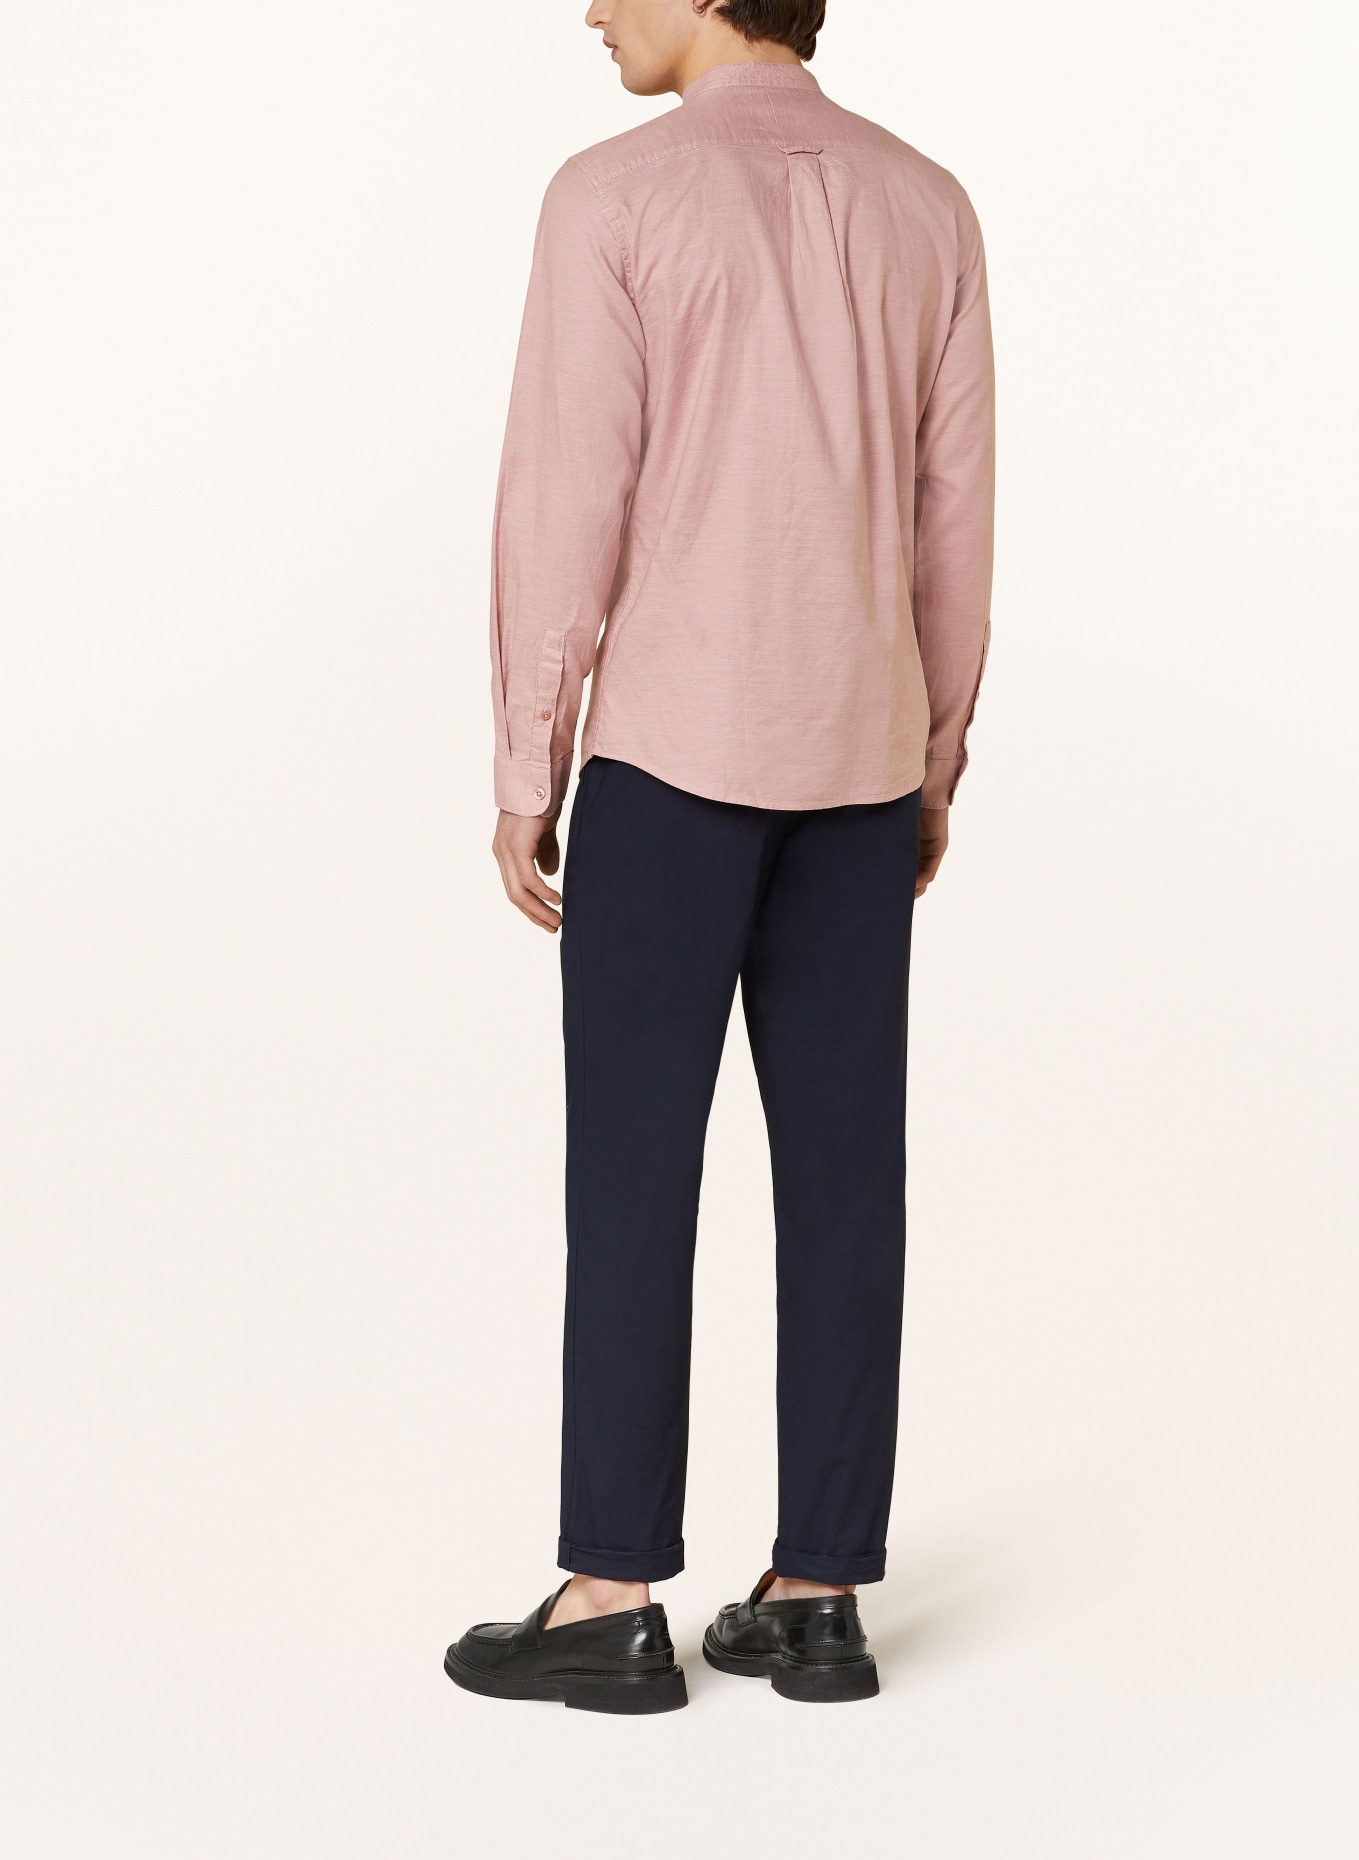 NOWADAYS Oxfordhemd Slim Fit mit Stehkragen, Farbe: ROSÉ (Bild 3)